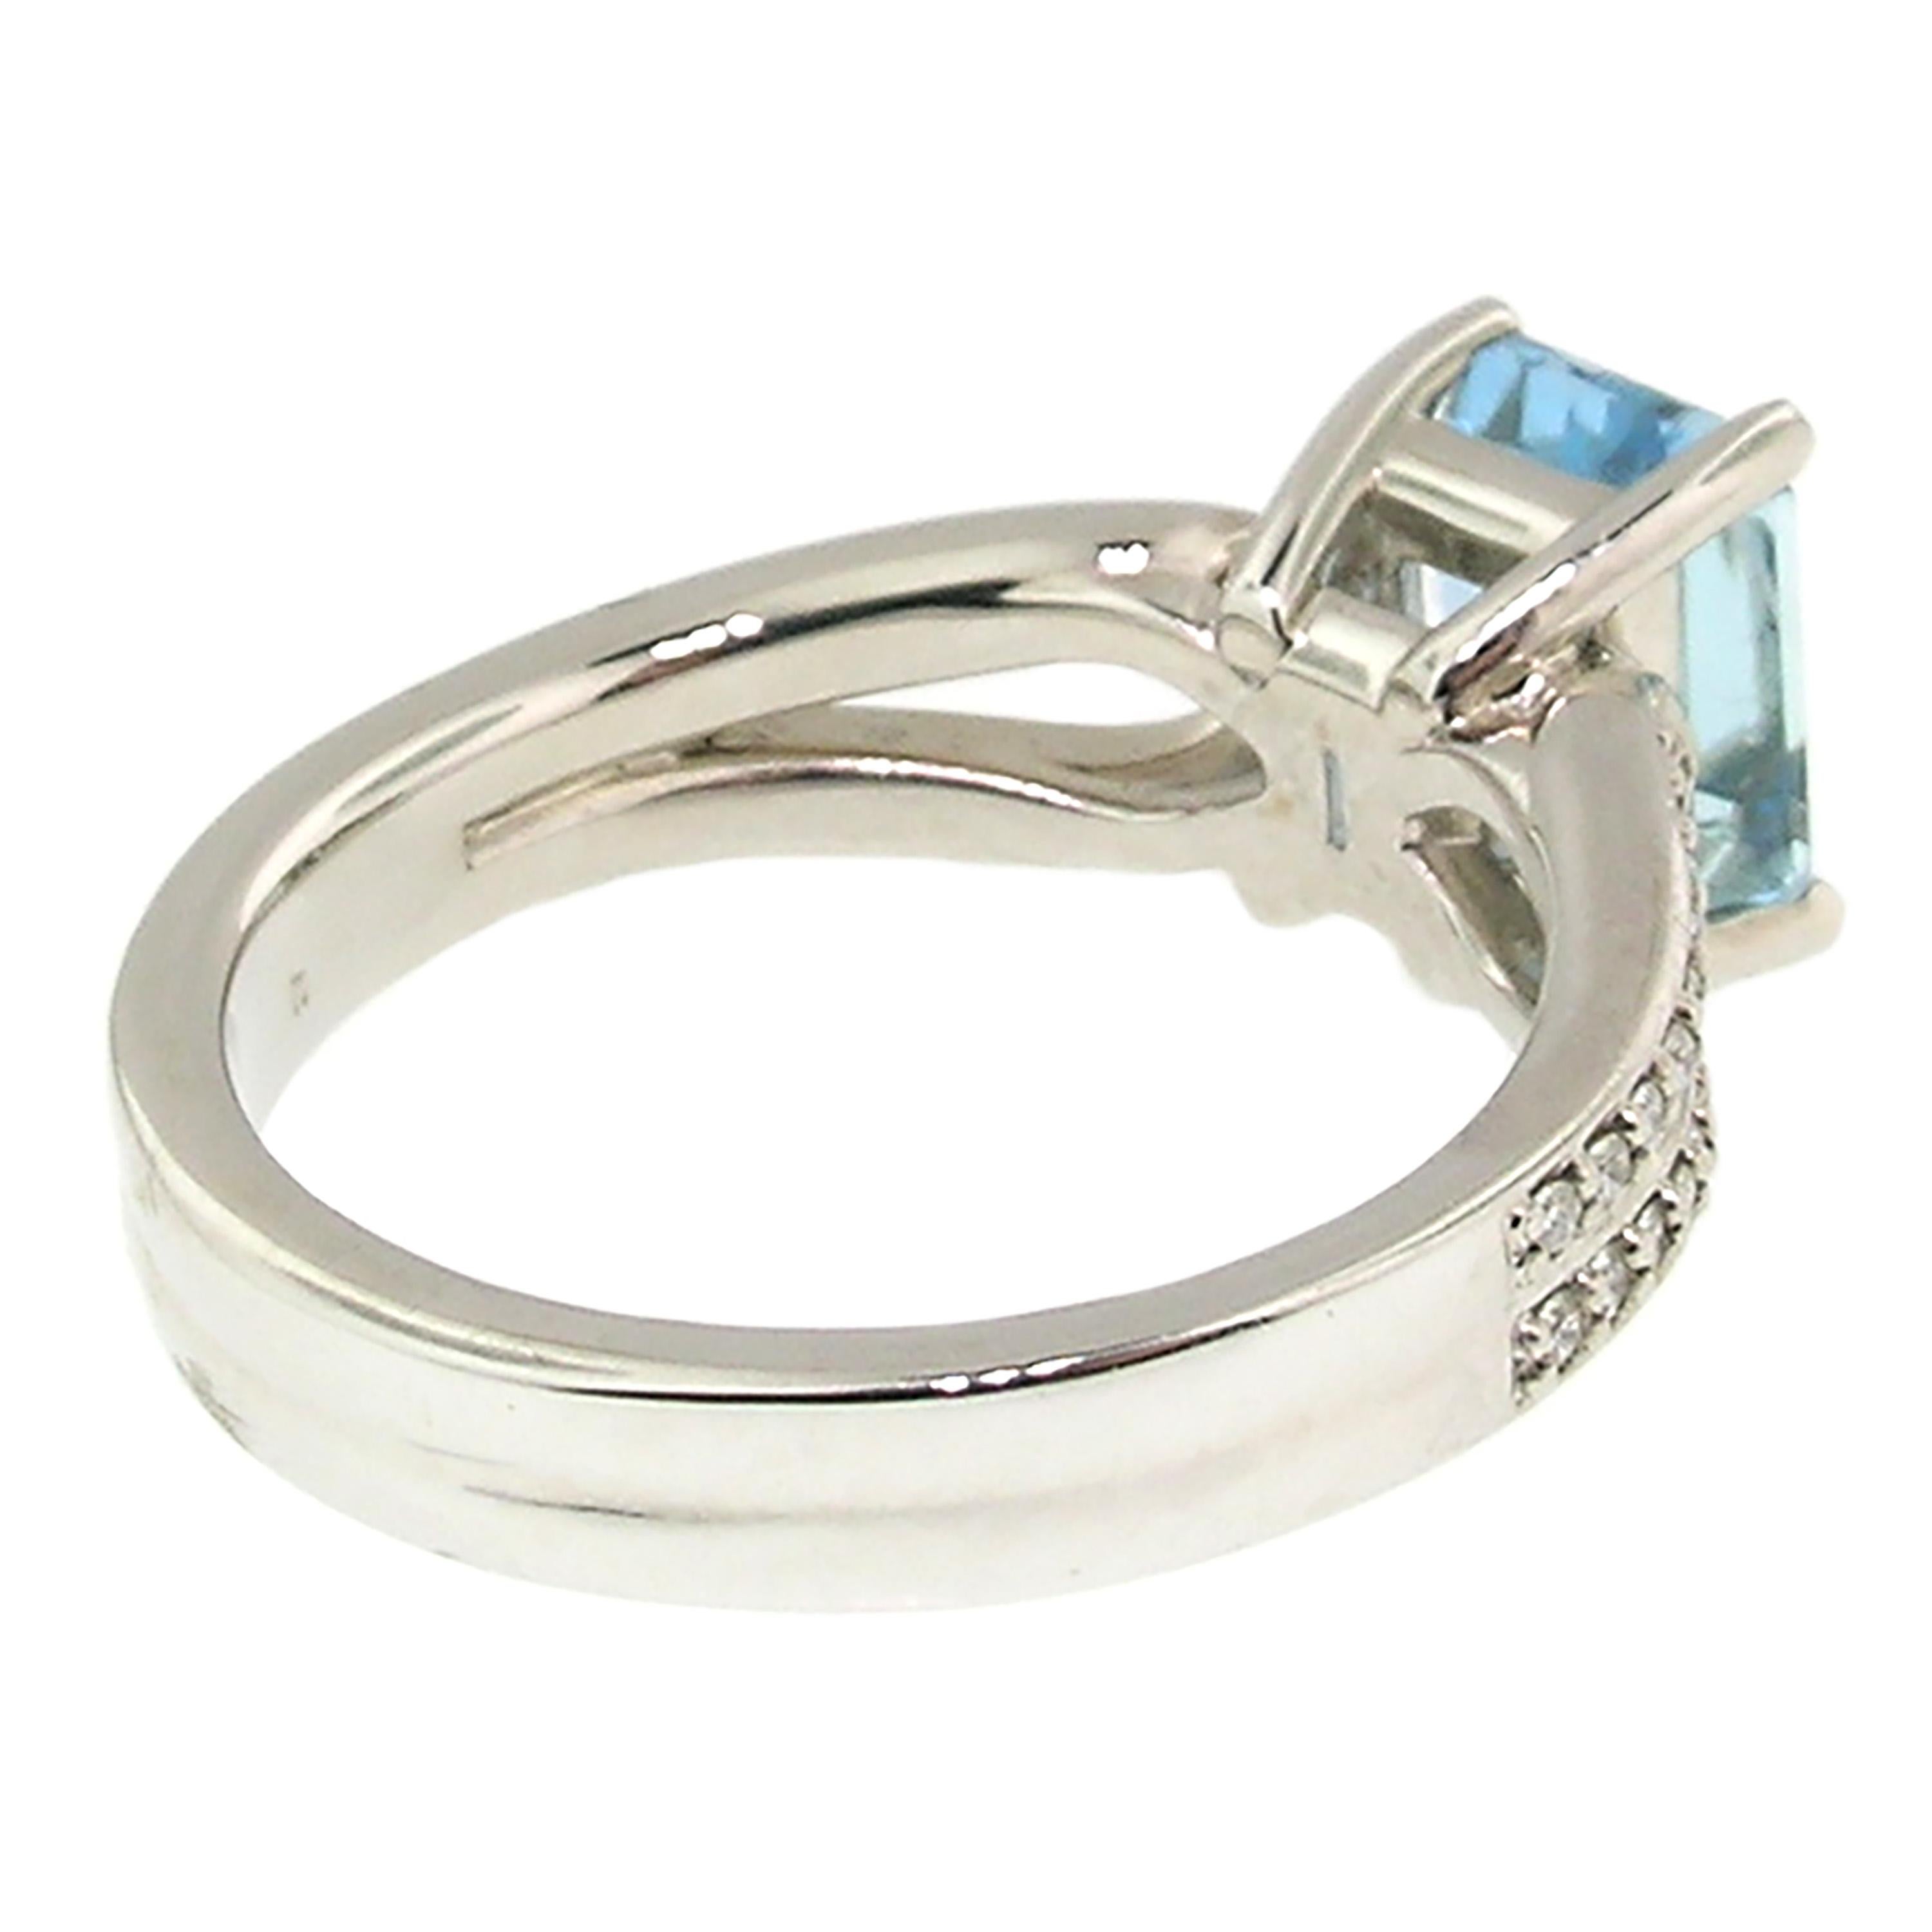 Women's 18 Karat White Gold and Diamond Custom Ring with 1.63 Carat Aquamarine